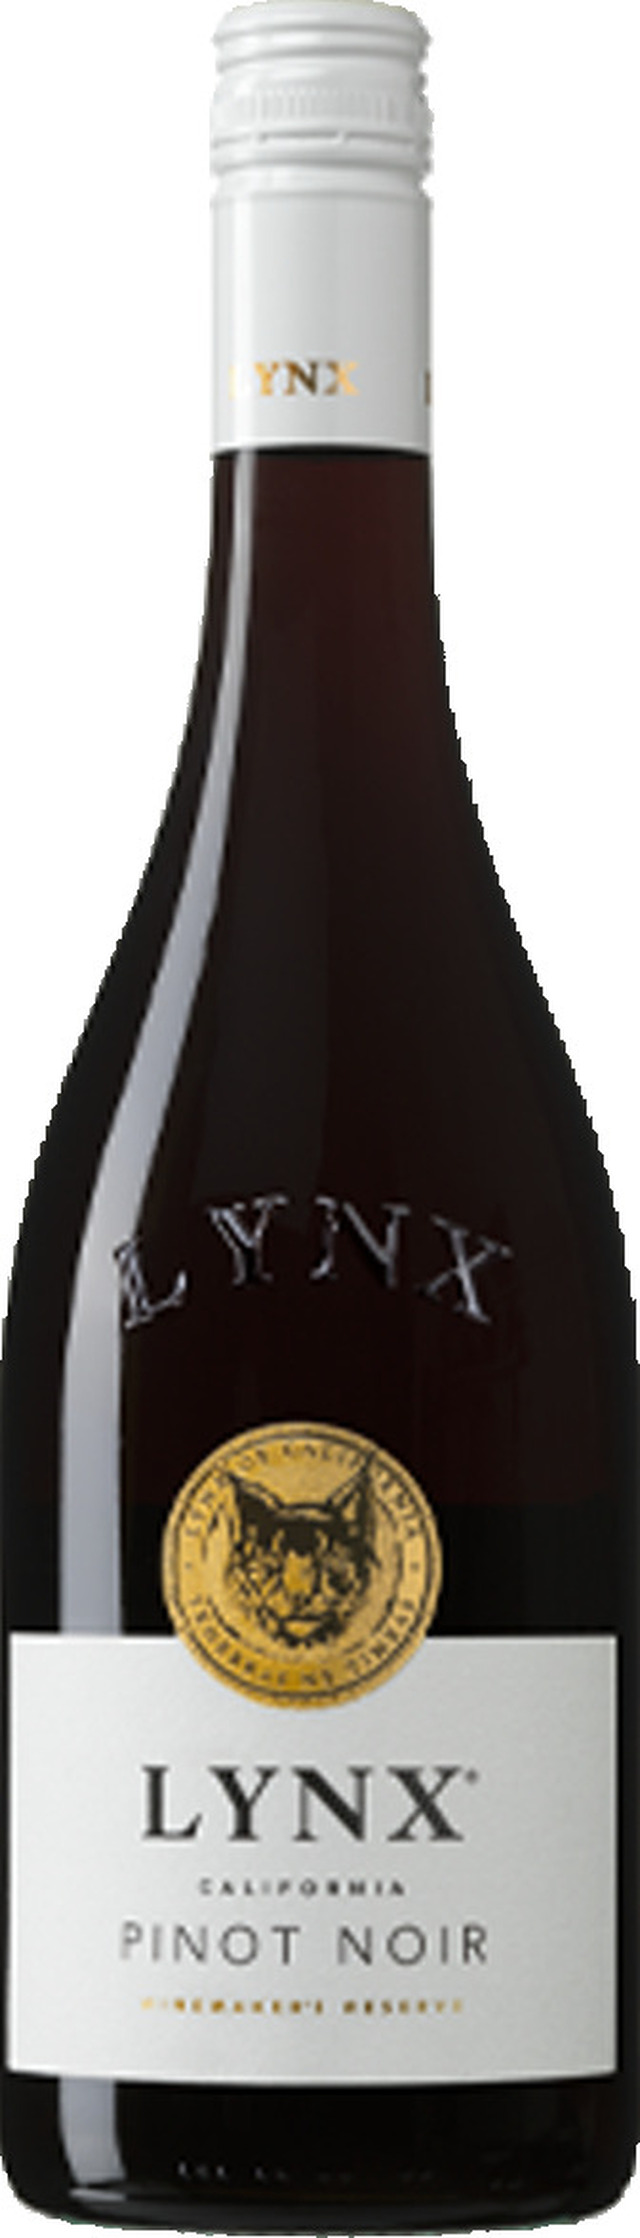 Lynx Pinot Noir